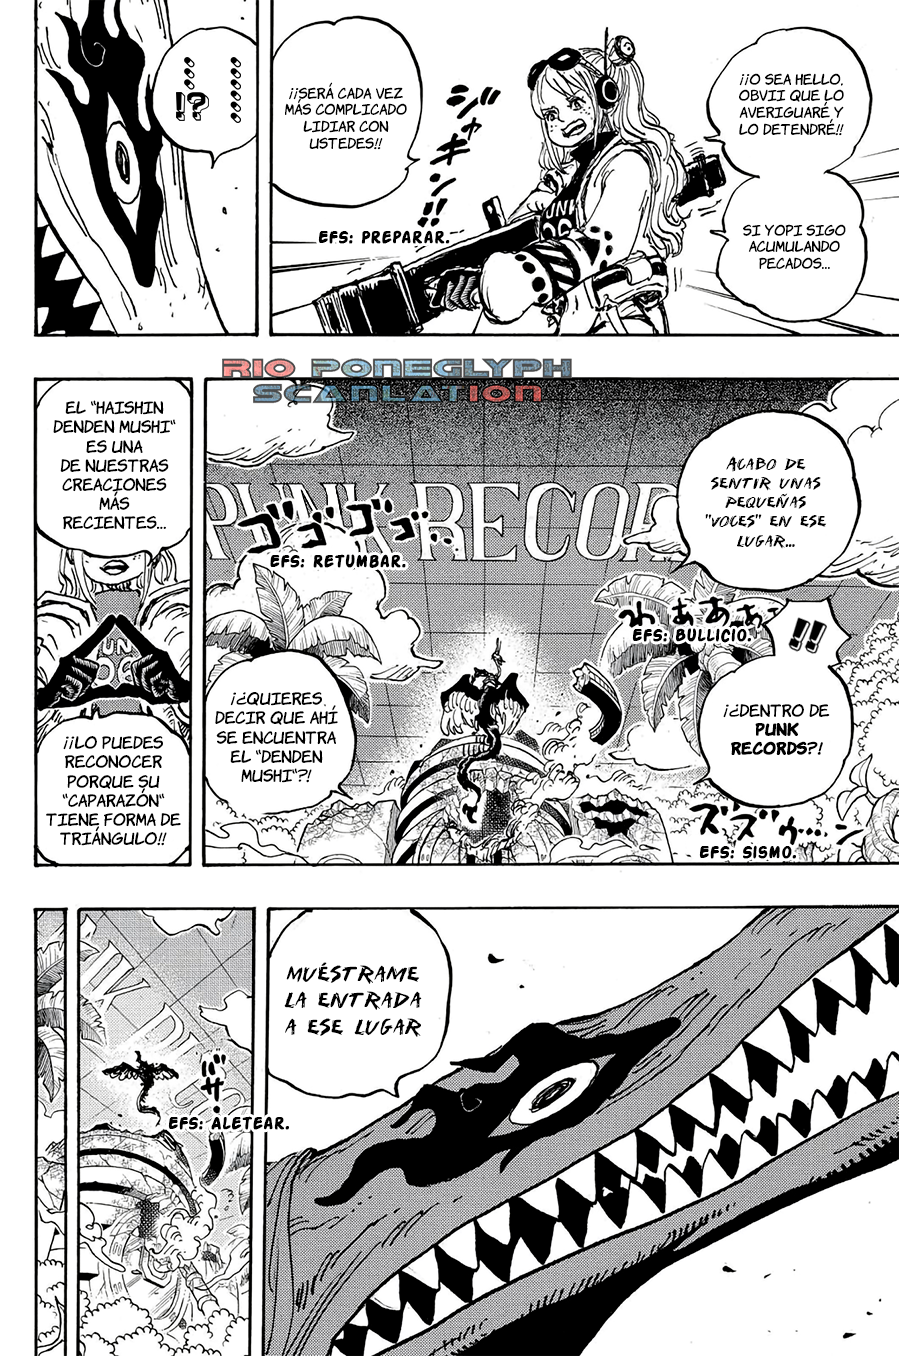 español - One Piece Manga 1112 [Español] [Rio Poneglyph Scans] 07-2